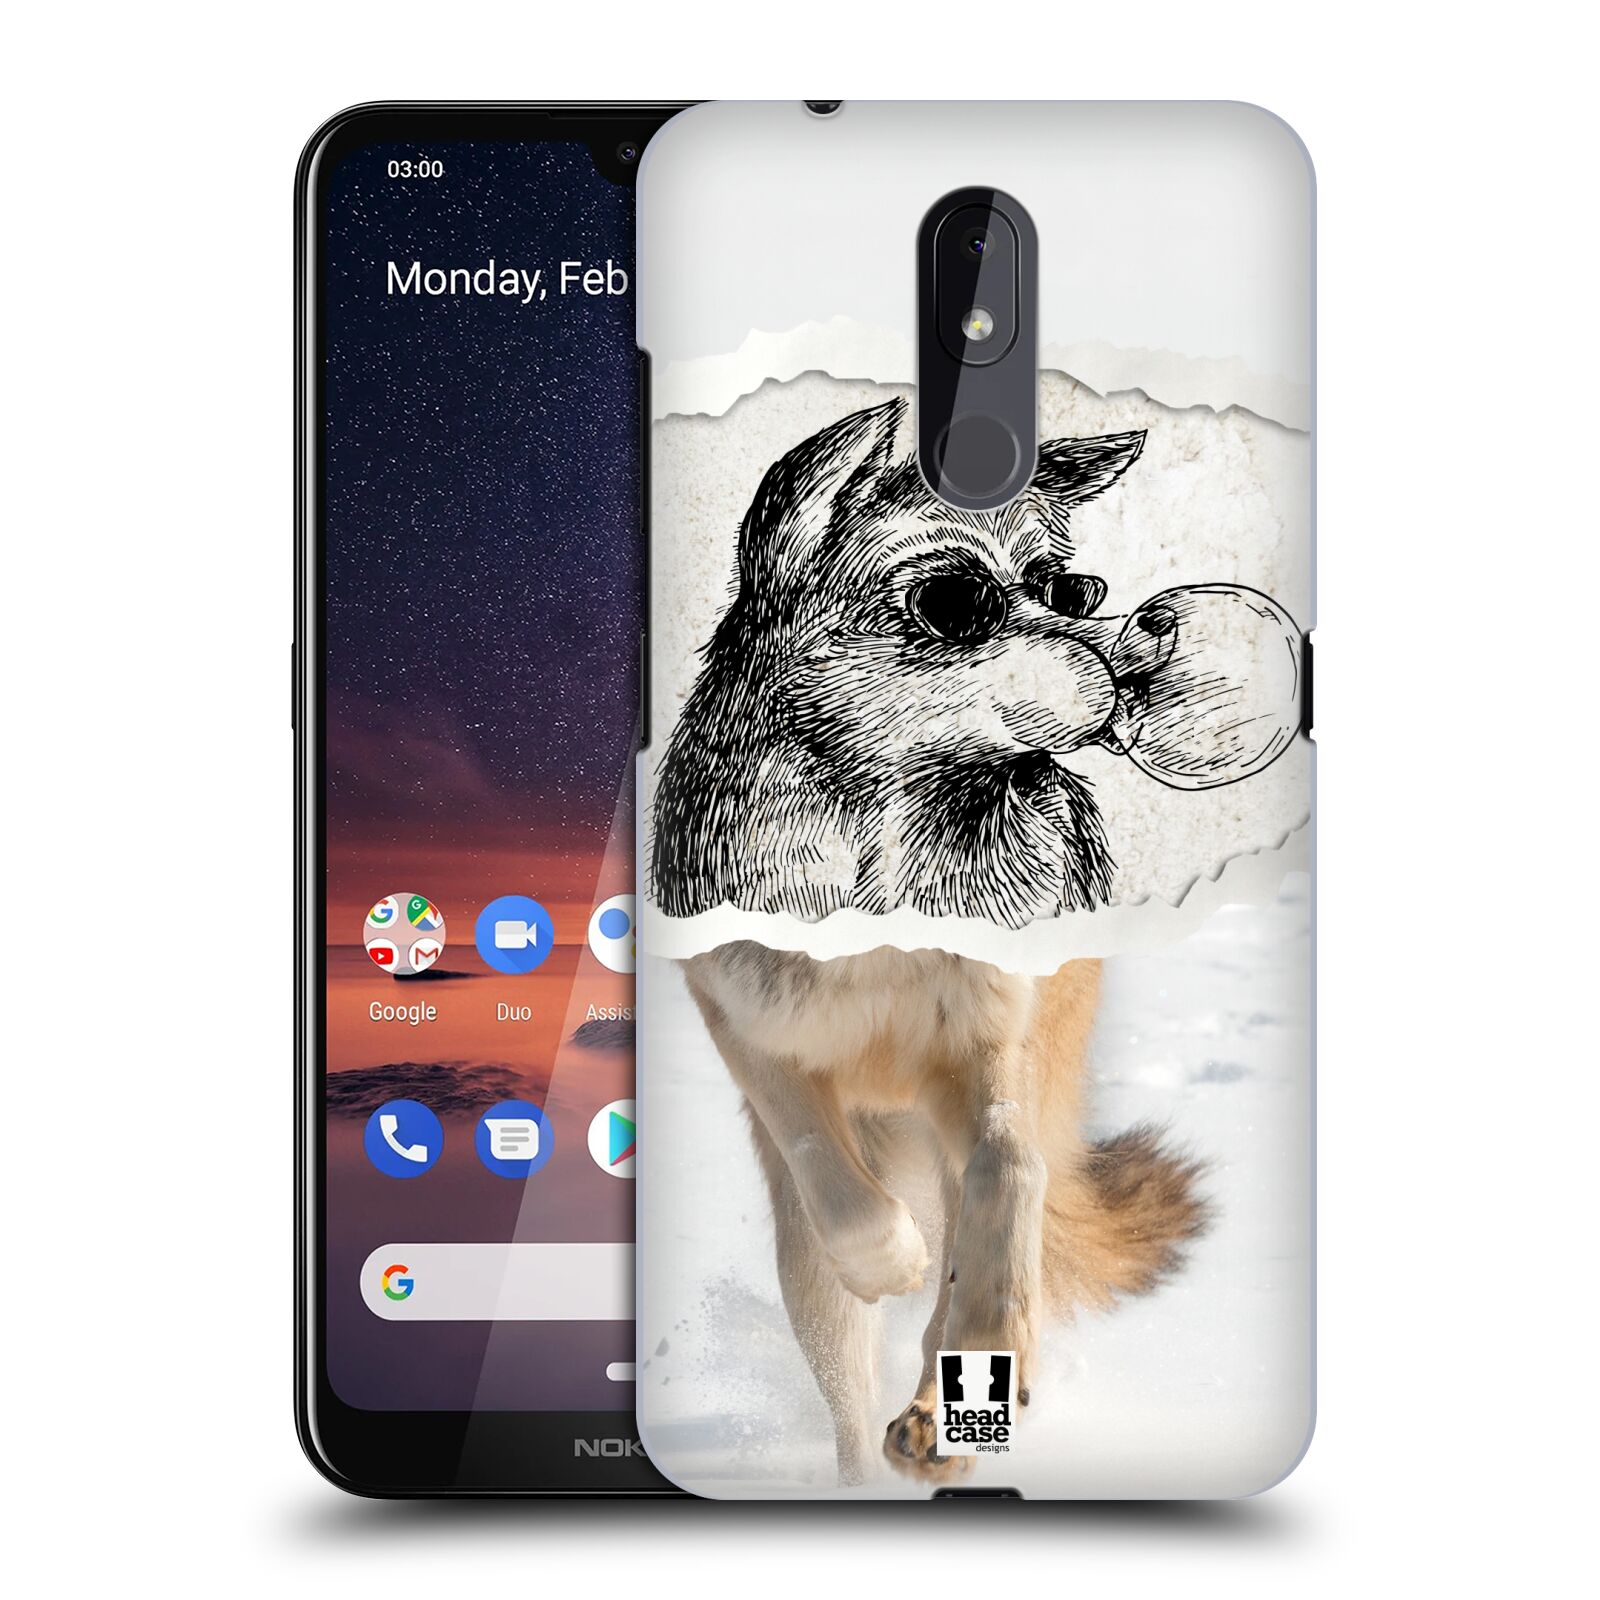 Pouzdro na mobil Nokia 3.2 - HEAD CASE - vzor zvířata koláž vlk pohodář